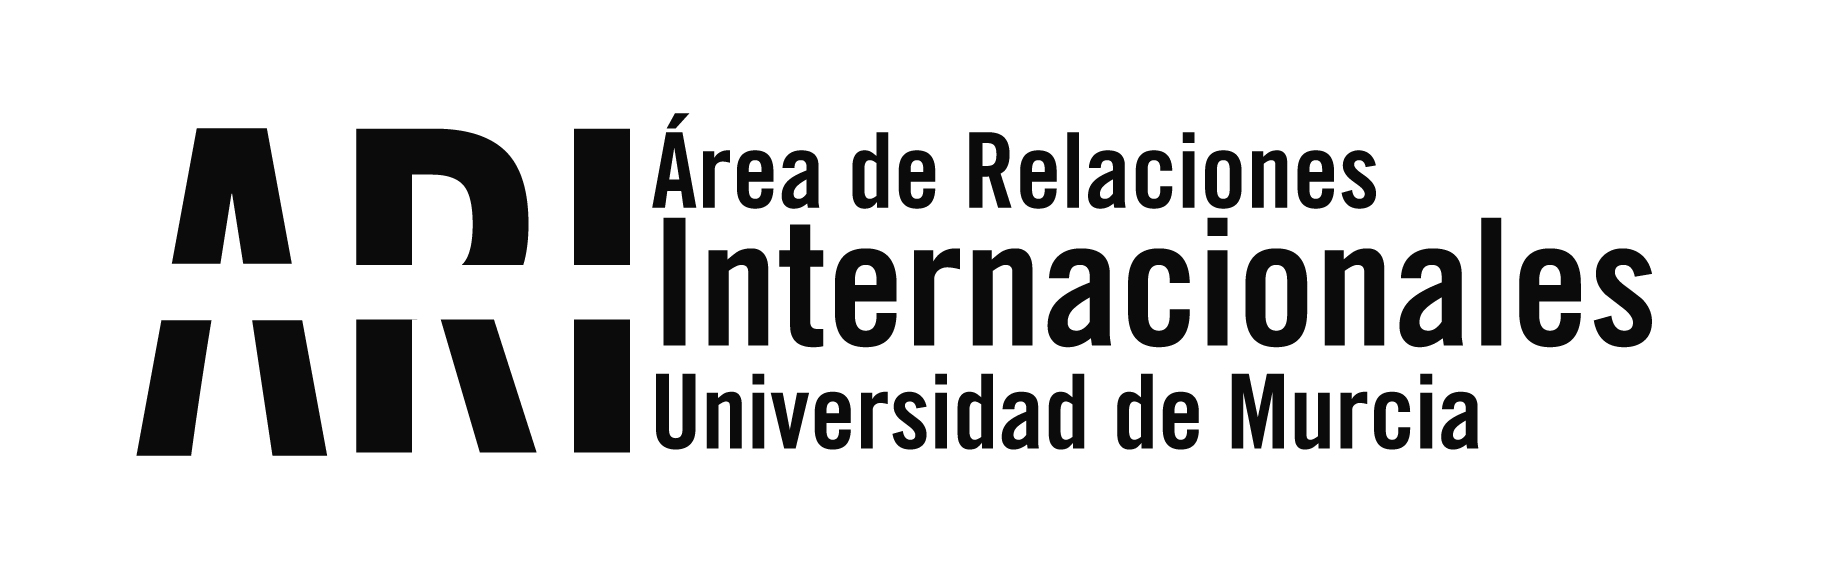 La UMU entrega los premios VI Santander Ingenio y XV Relato Corto con ayudas para estudiantes que se marchan de estancias internacionales - Área de Relaciones Internacionales